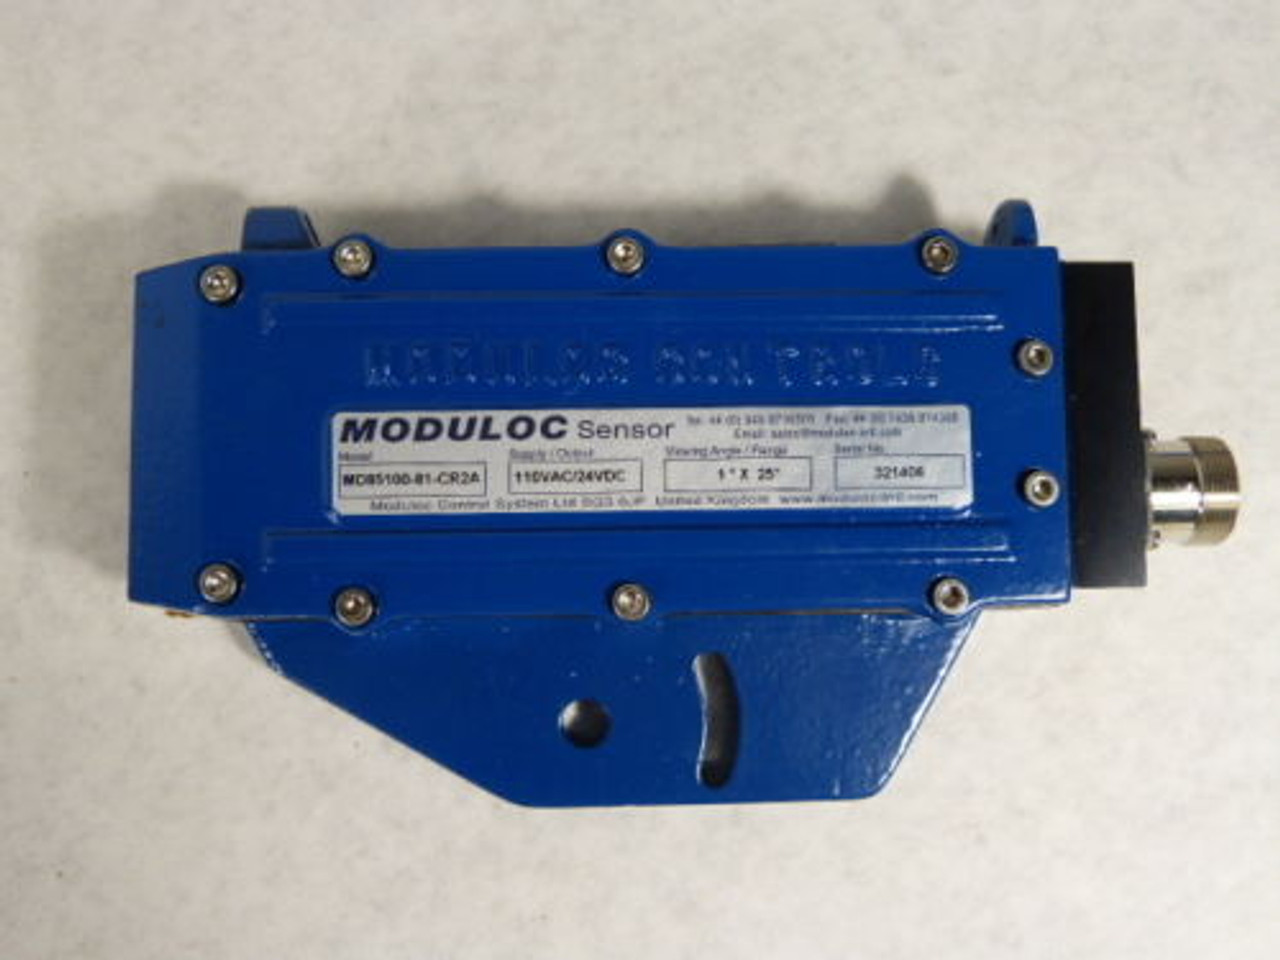 Moduloc MD85100-81-CR2A Hot Metal Detector 110VAC 24VDC ! NOP !